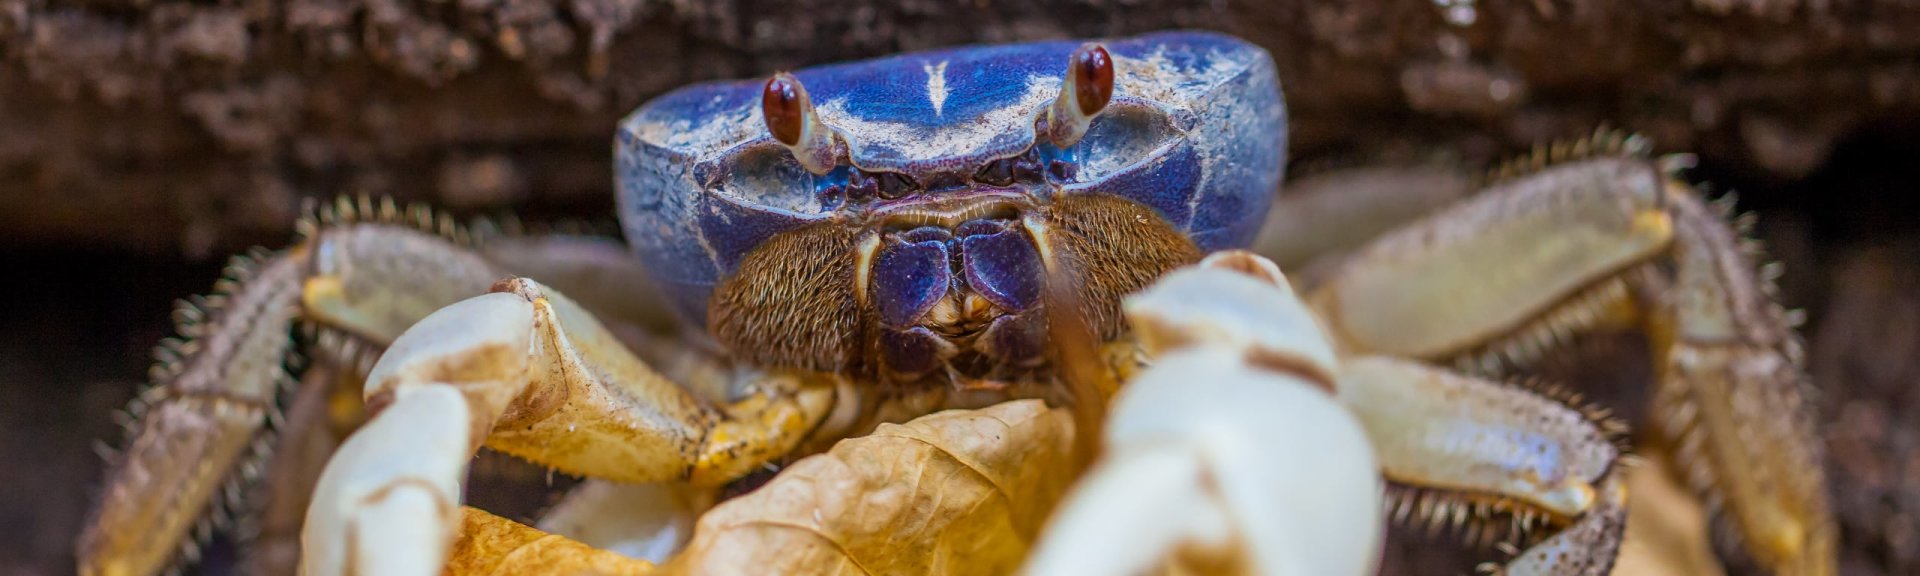 Blue crab. Photo: [Wondrous World Images](https://www.wondrousworldimages.com.au)